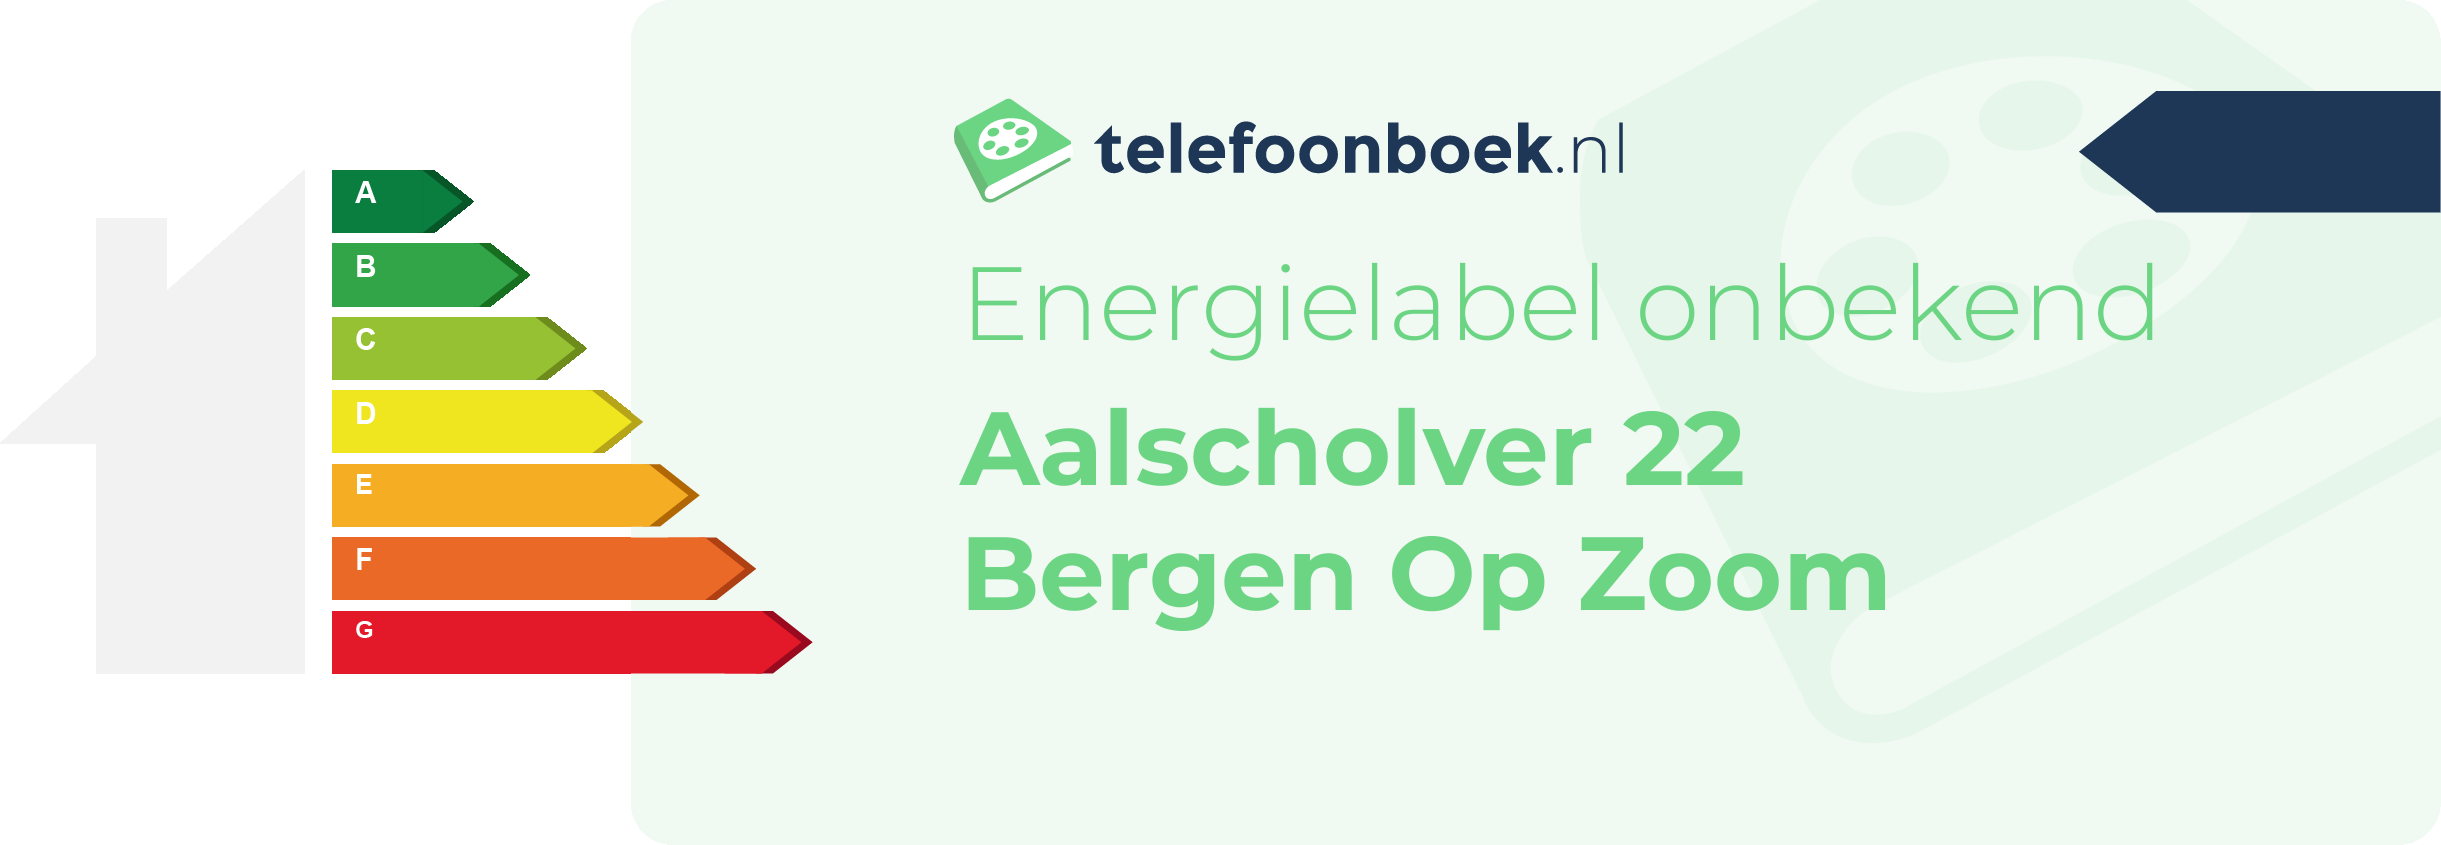 Energielabel Aalscholver 22 Bergen Op Zoom